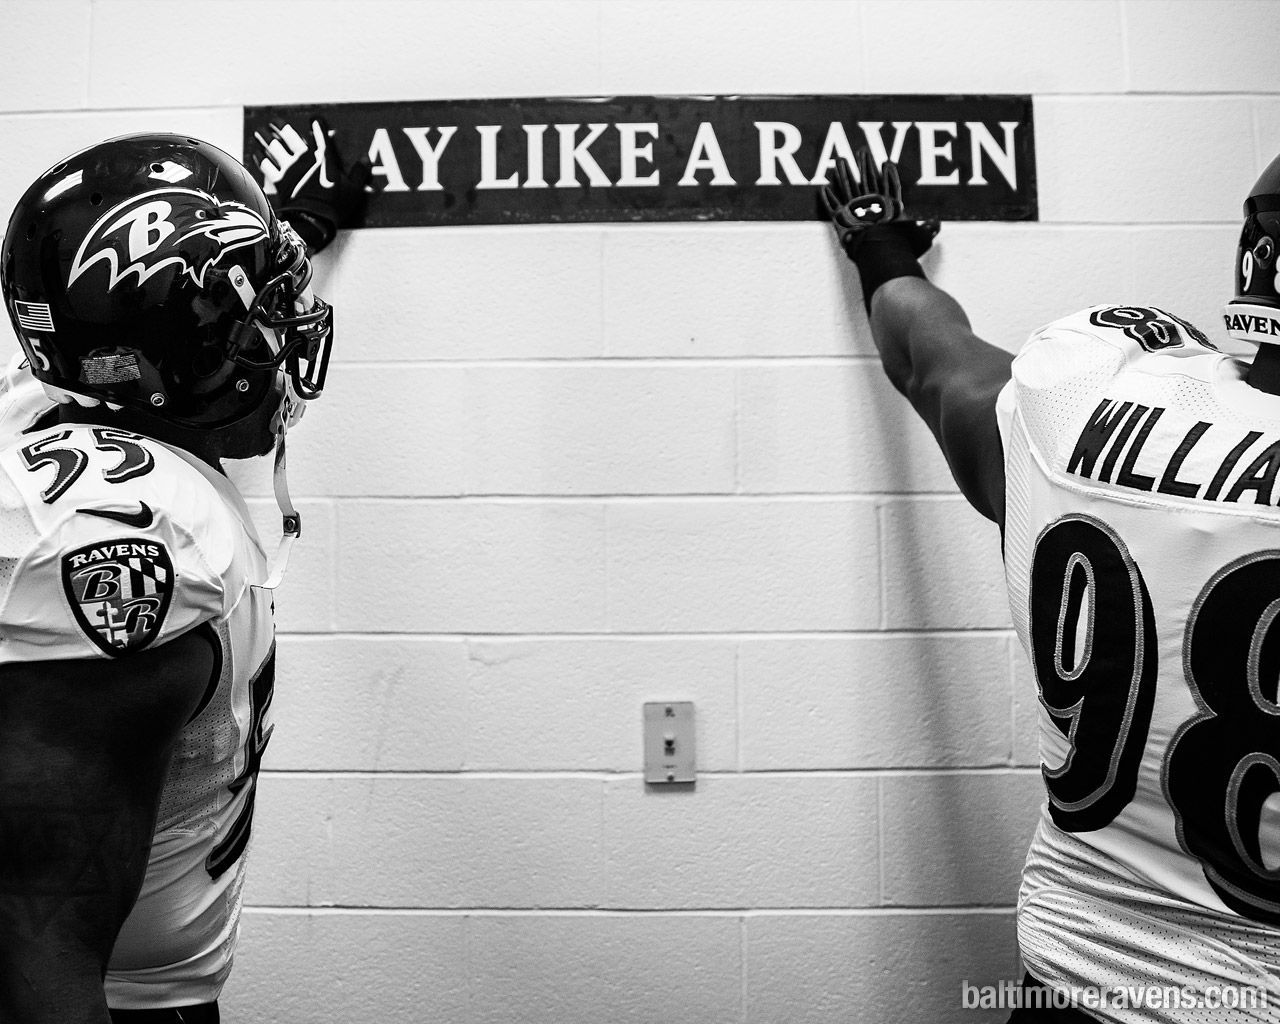 Baltimore Ravens | Ravenstown | Downloads